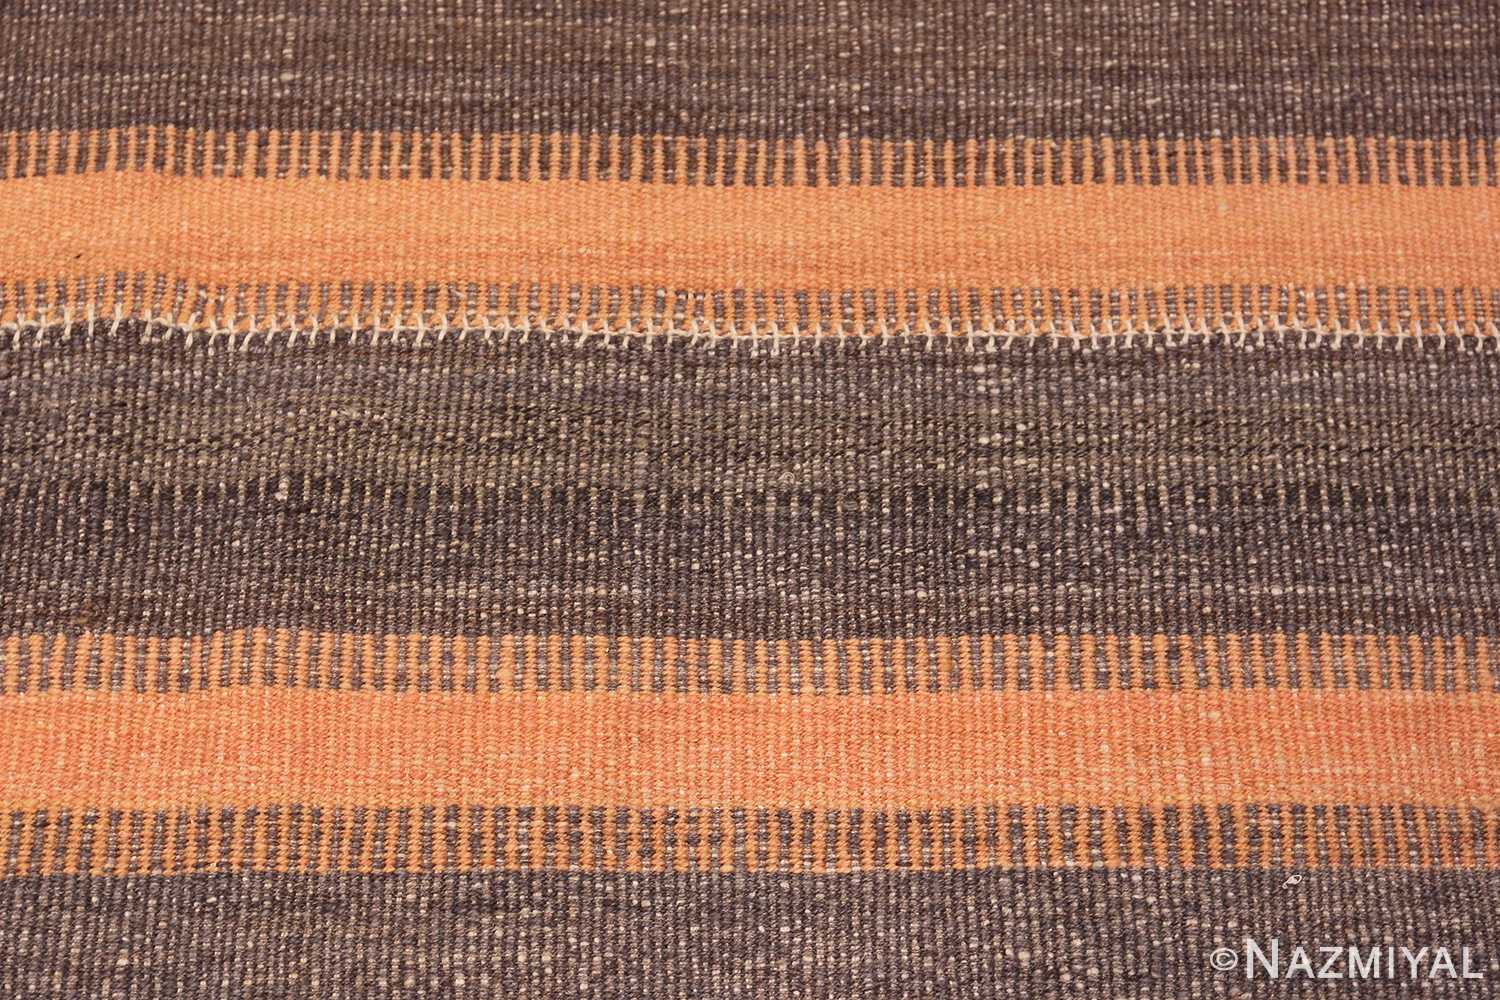 Close Up Brown Modern Persian Flat Weave Rug 60101 by Nazmiyal NYC